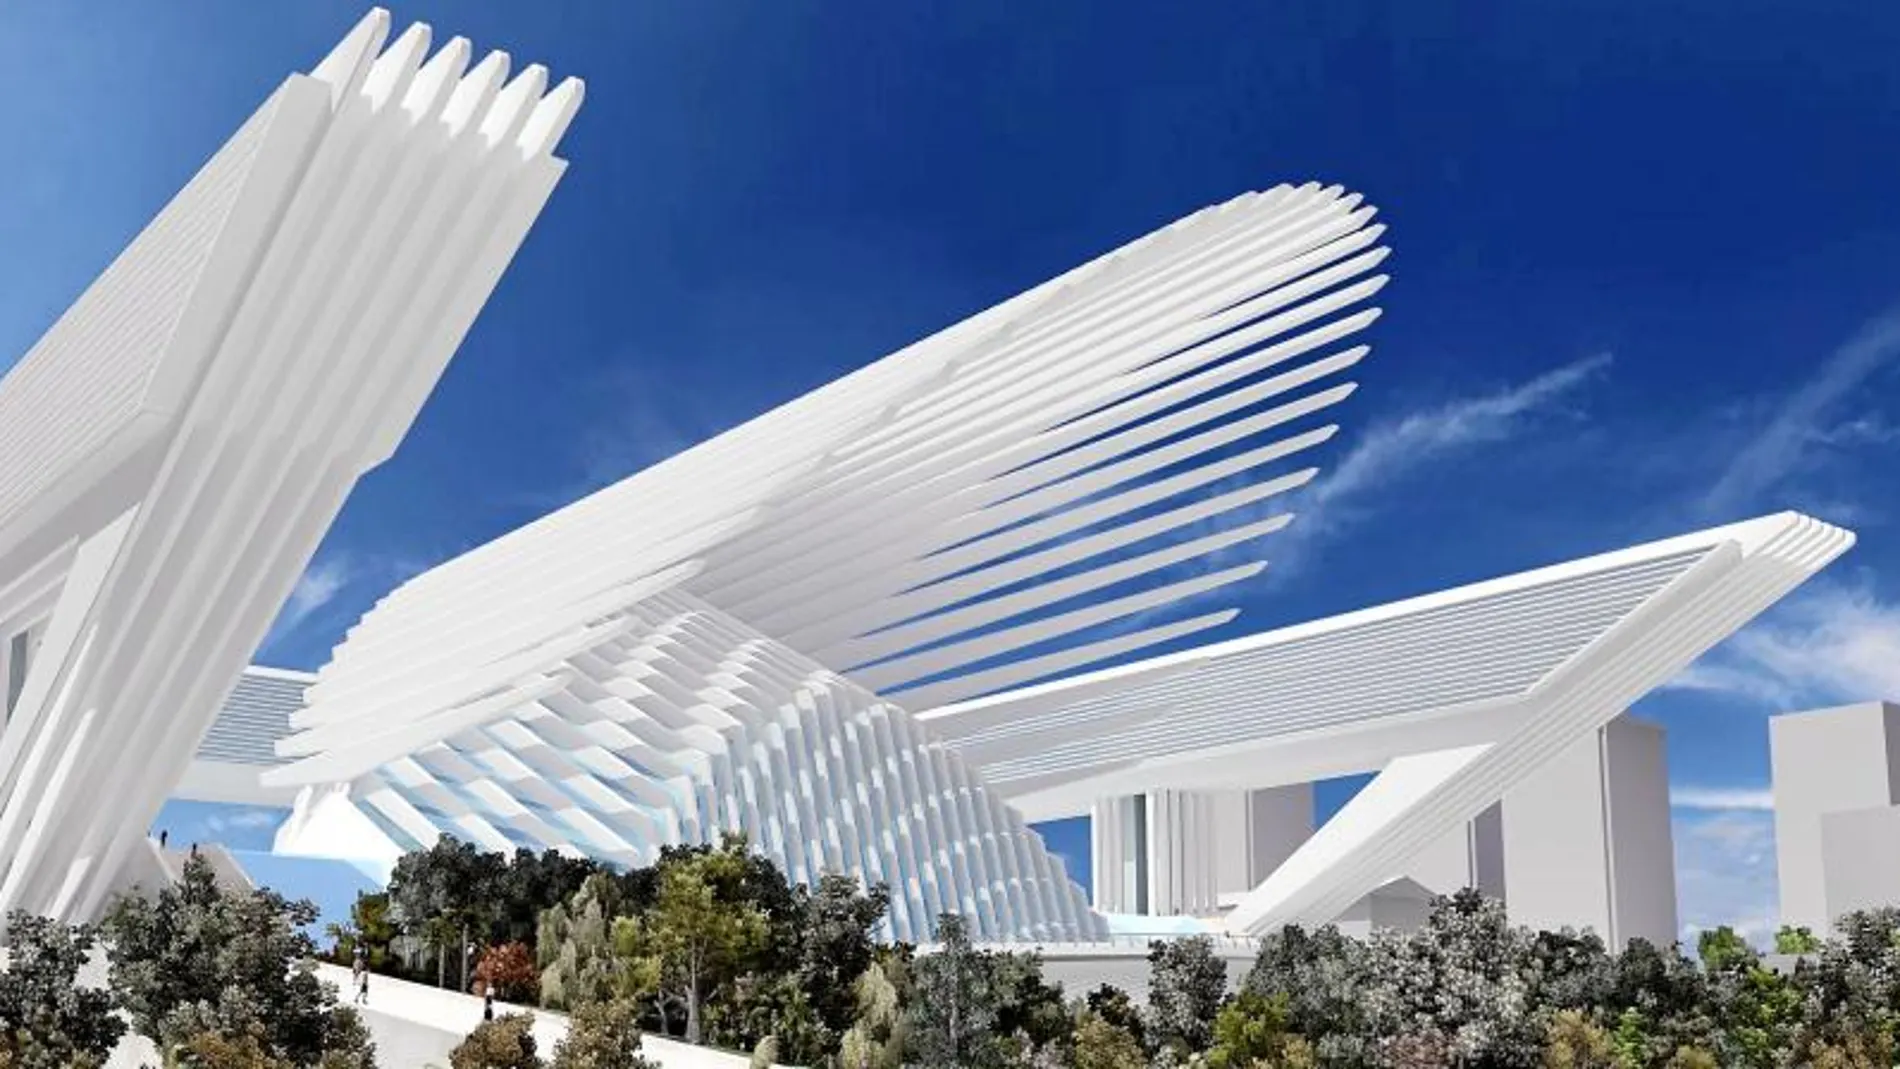 Imagen inicial del proyecto de Calatrava del Palacio de Congresos de Oviedo, situado en una zona residencial